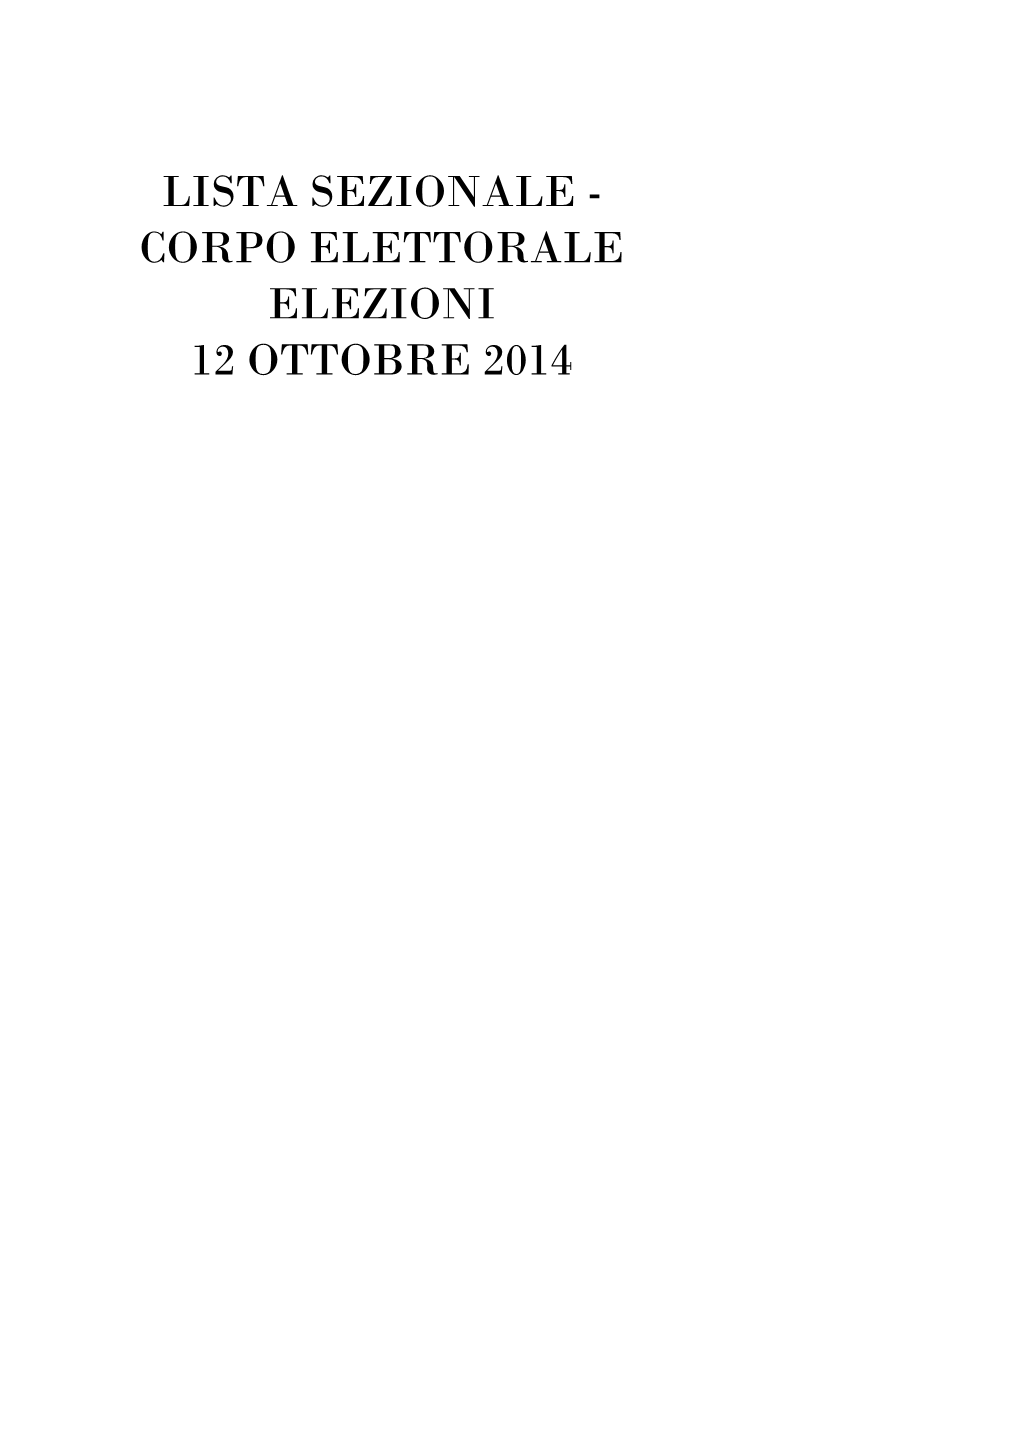 Corpo Elettorale Elezioni 12 Ottobre 2014